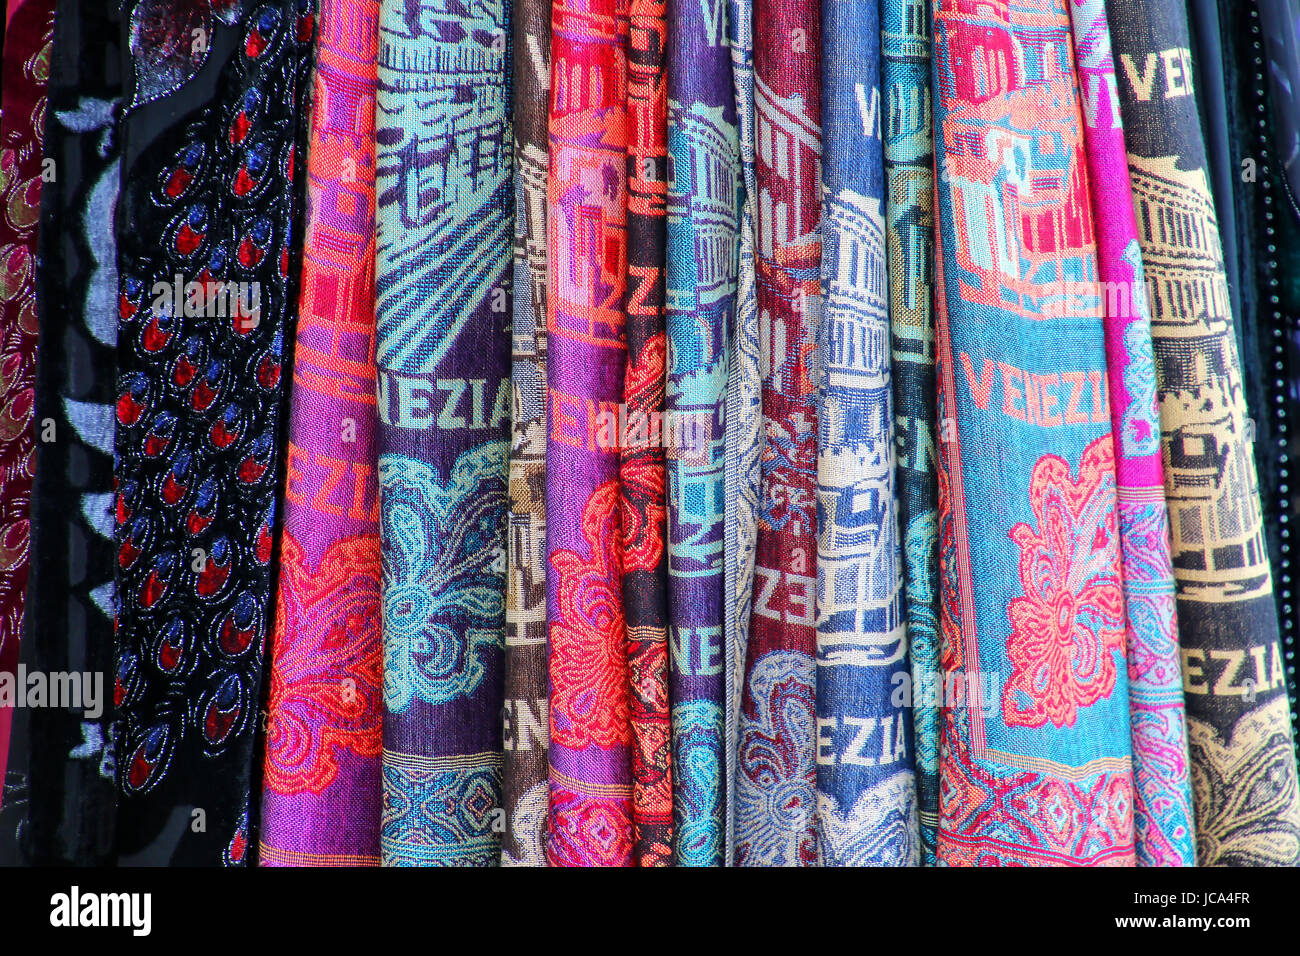 Afficher des produits textiles à un magasin de souvenirs dans les rues de Venise, Italie. Banque D'Images